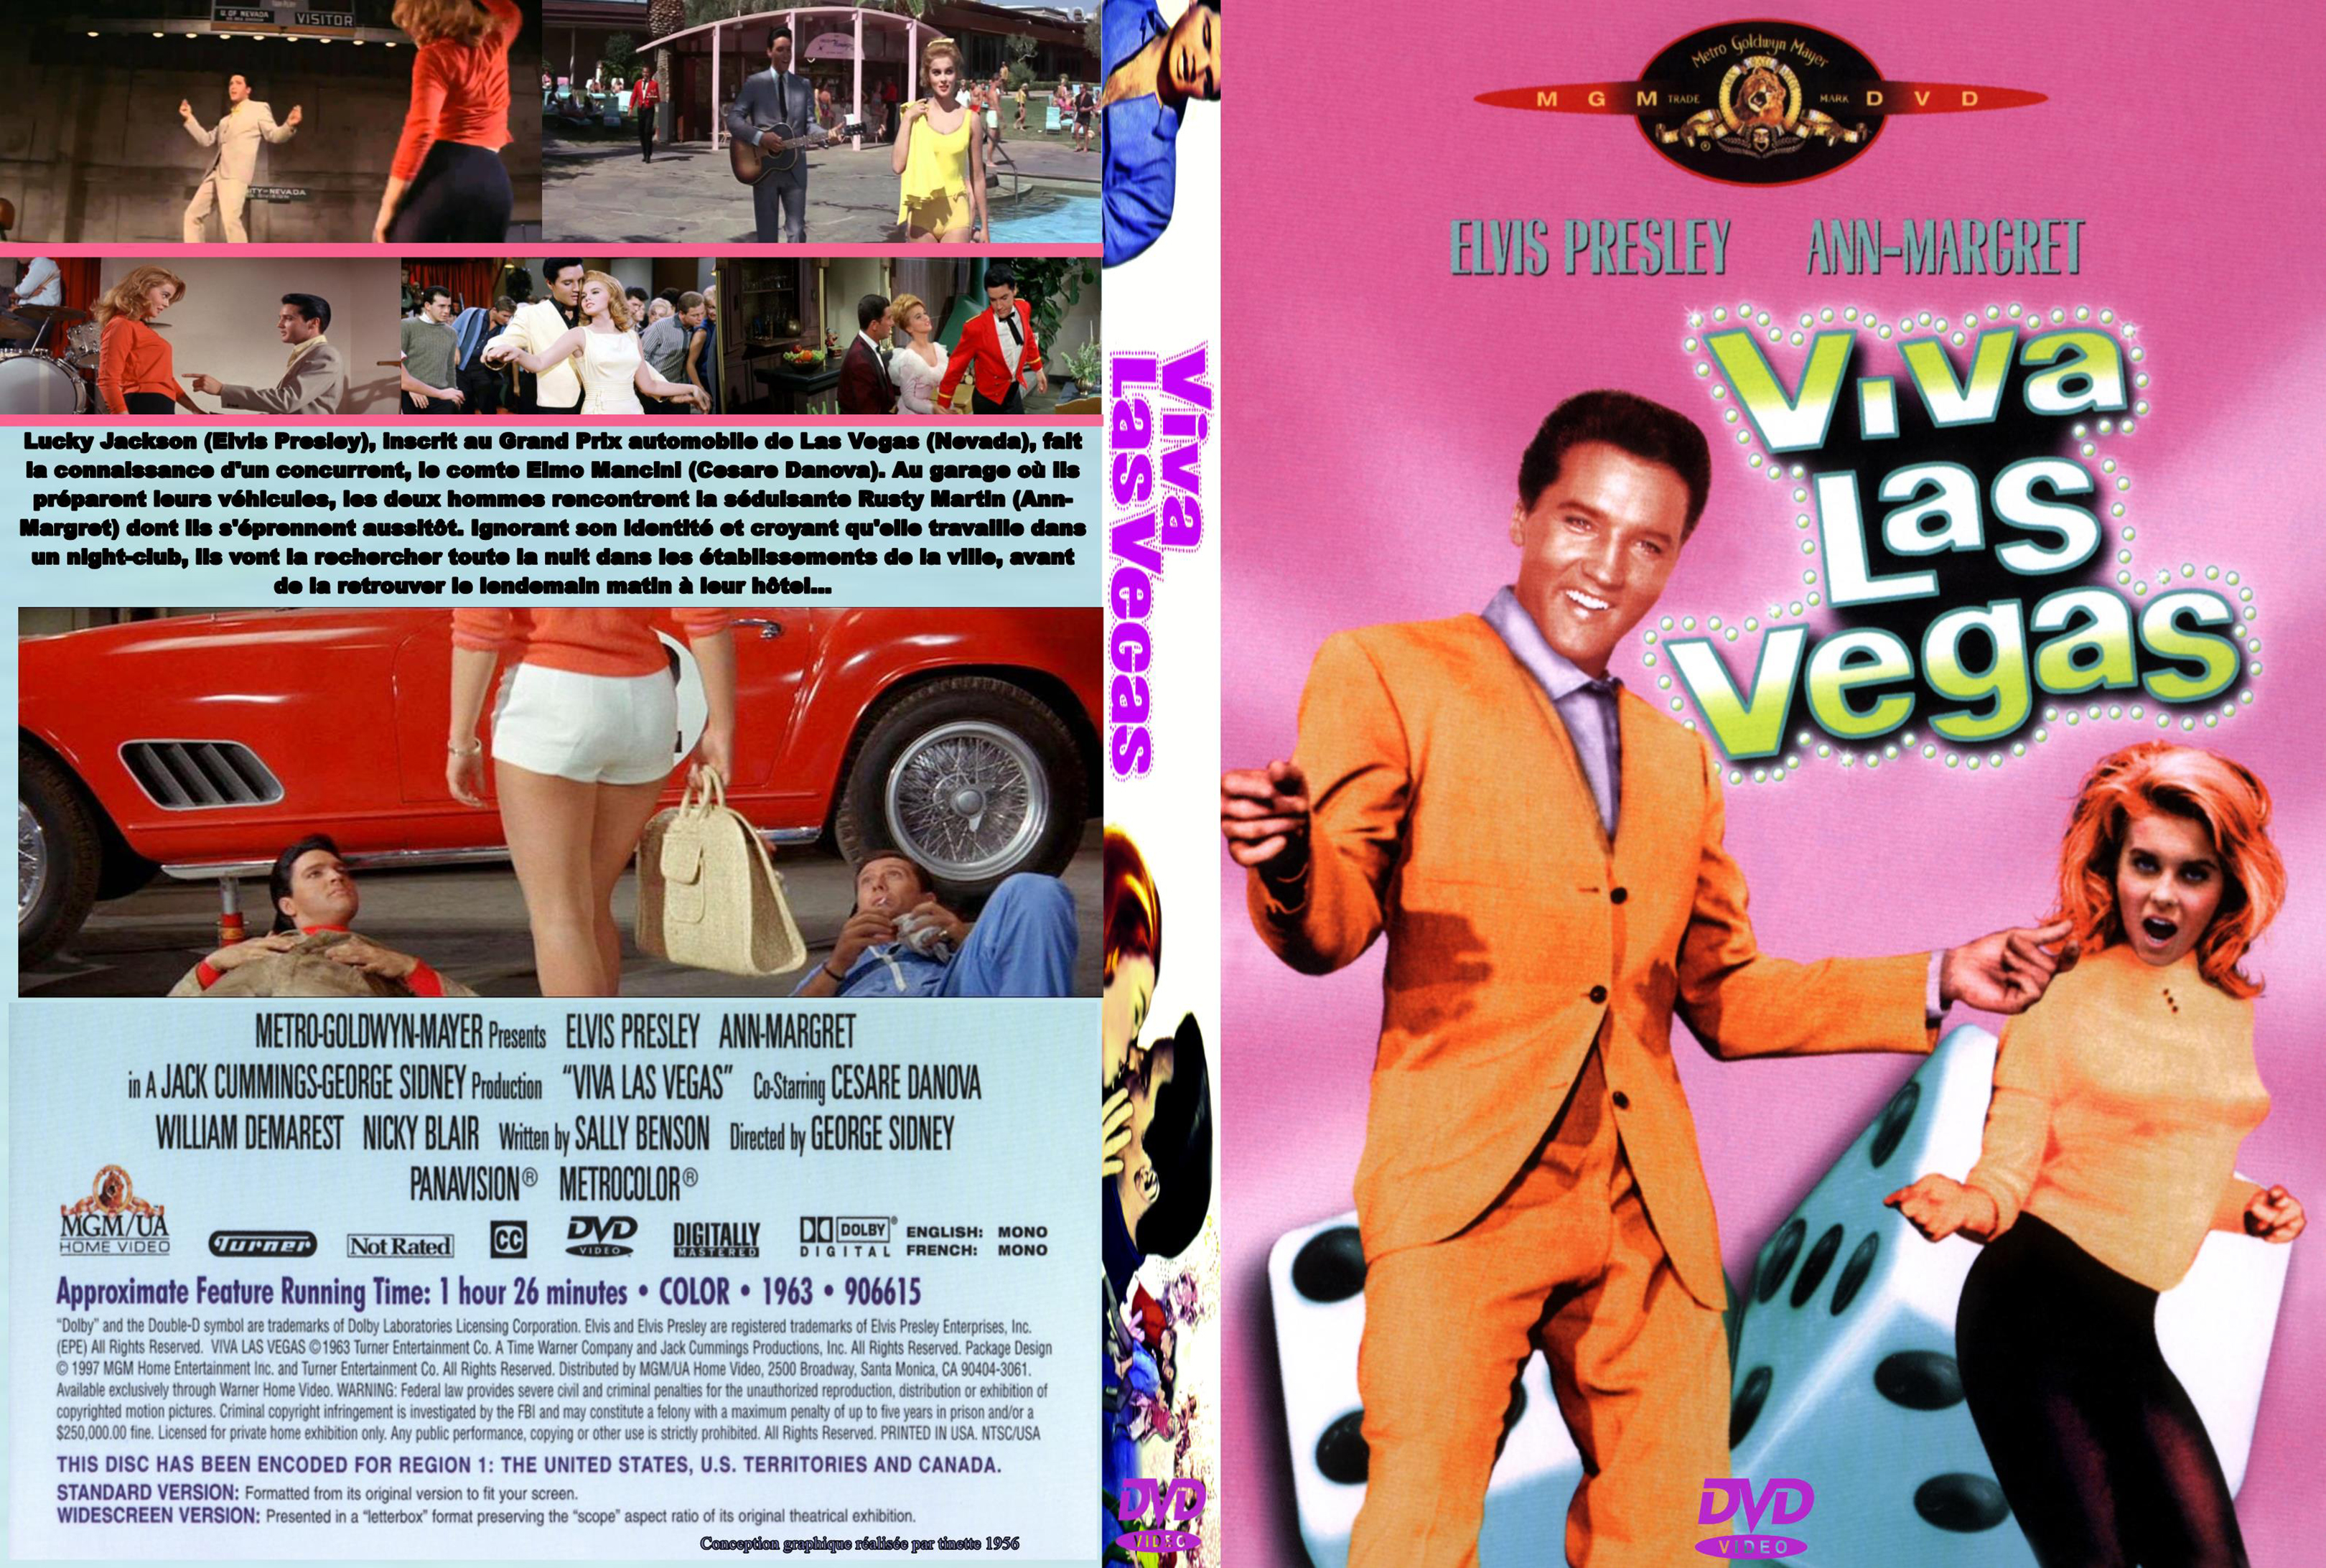 Jaquette DVD Viva las vegas custom